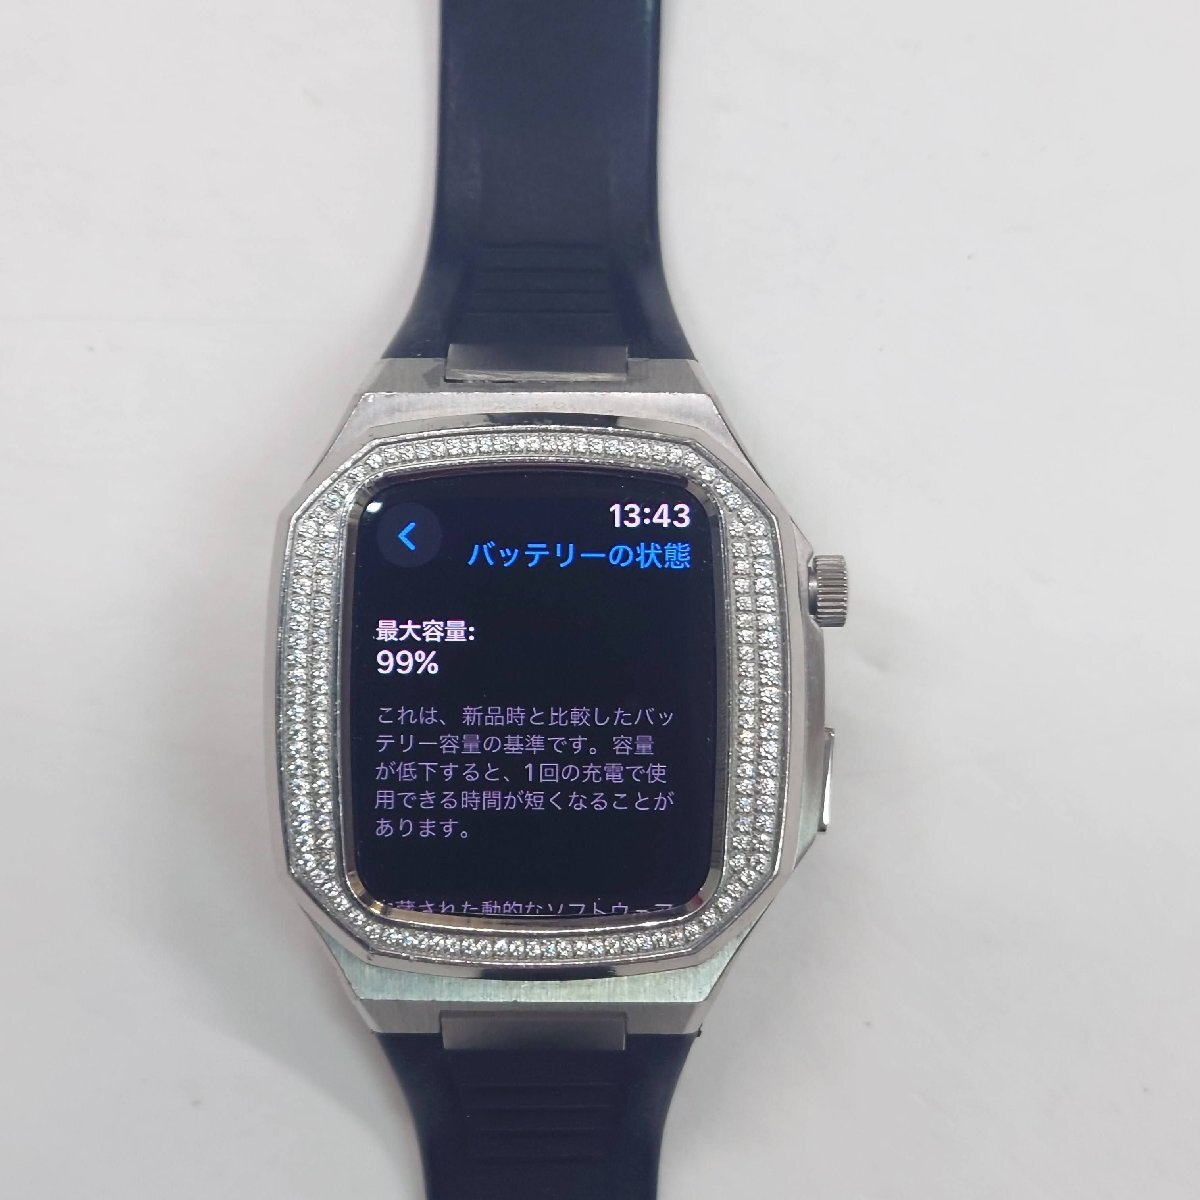 [139-12818w]Apple Watch SE GPS модель 44mm MKQ63J/A частичная недостача иметь 